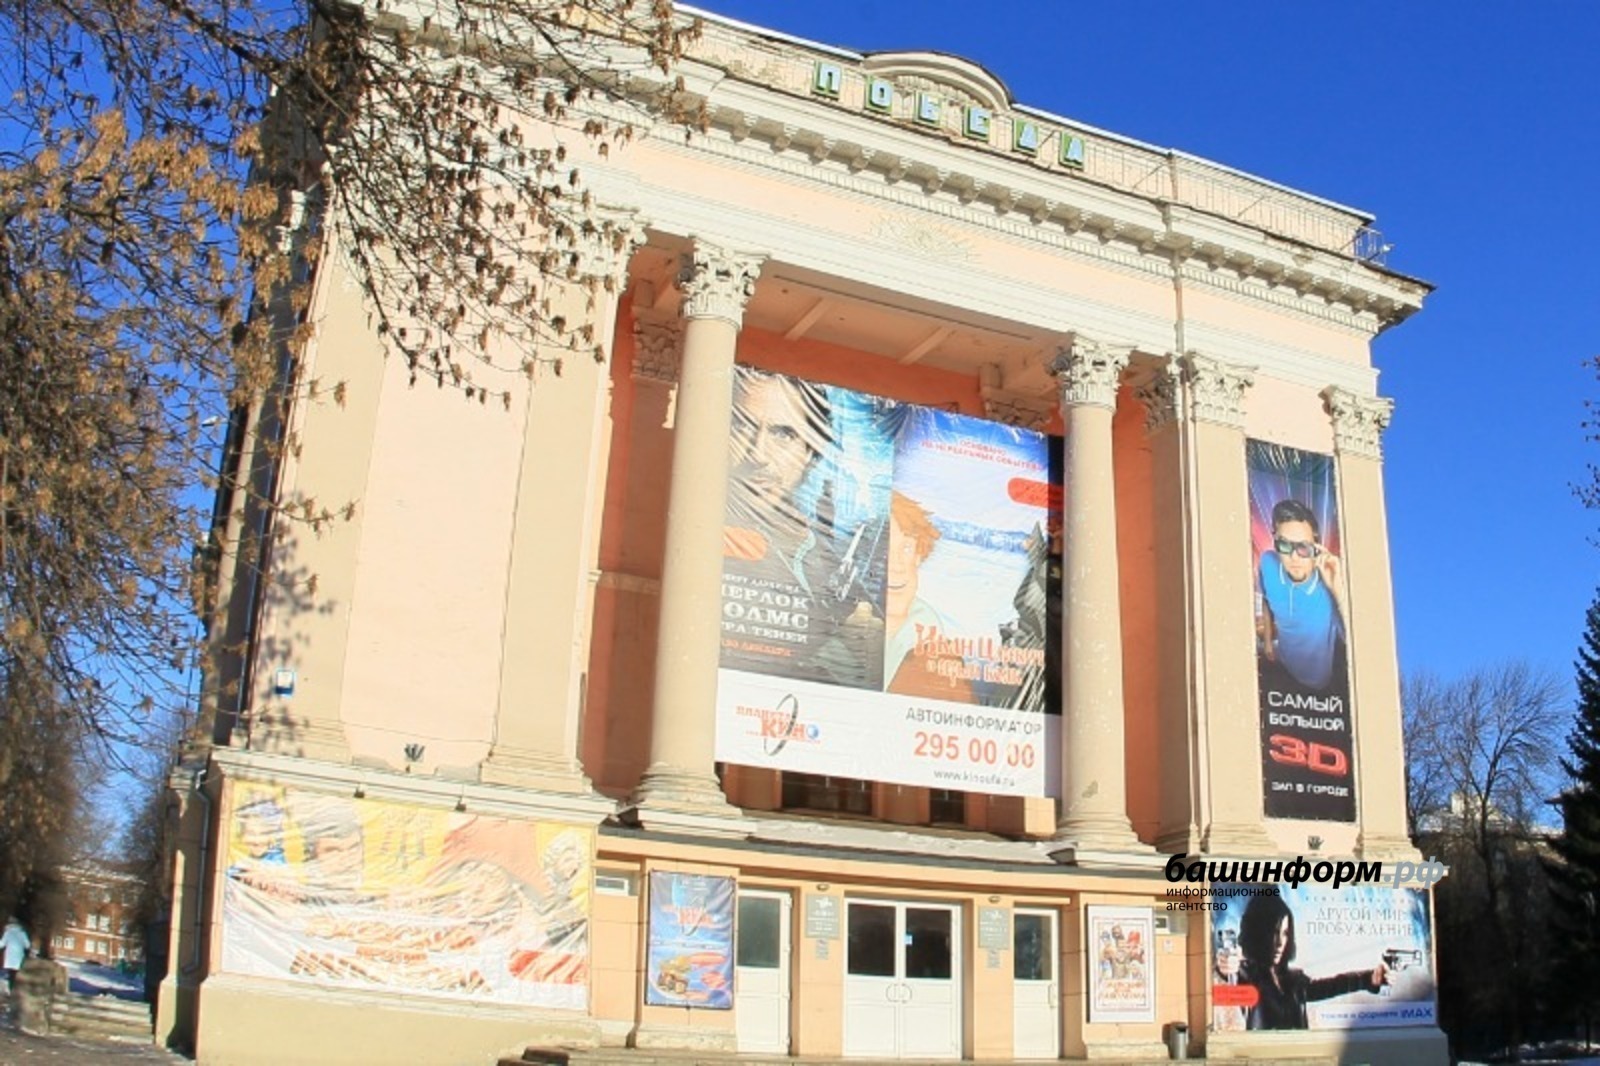 В Башкирии утверждены правила использования и границы объекта культнаследия «Кинотеатр «Победа»»